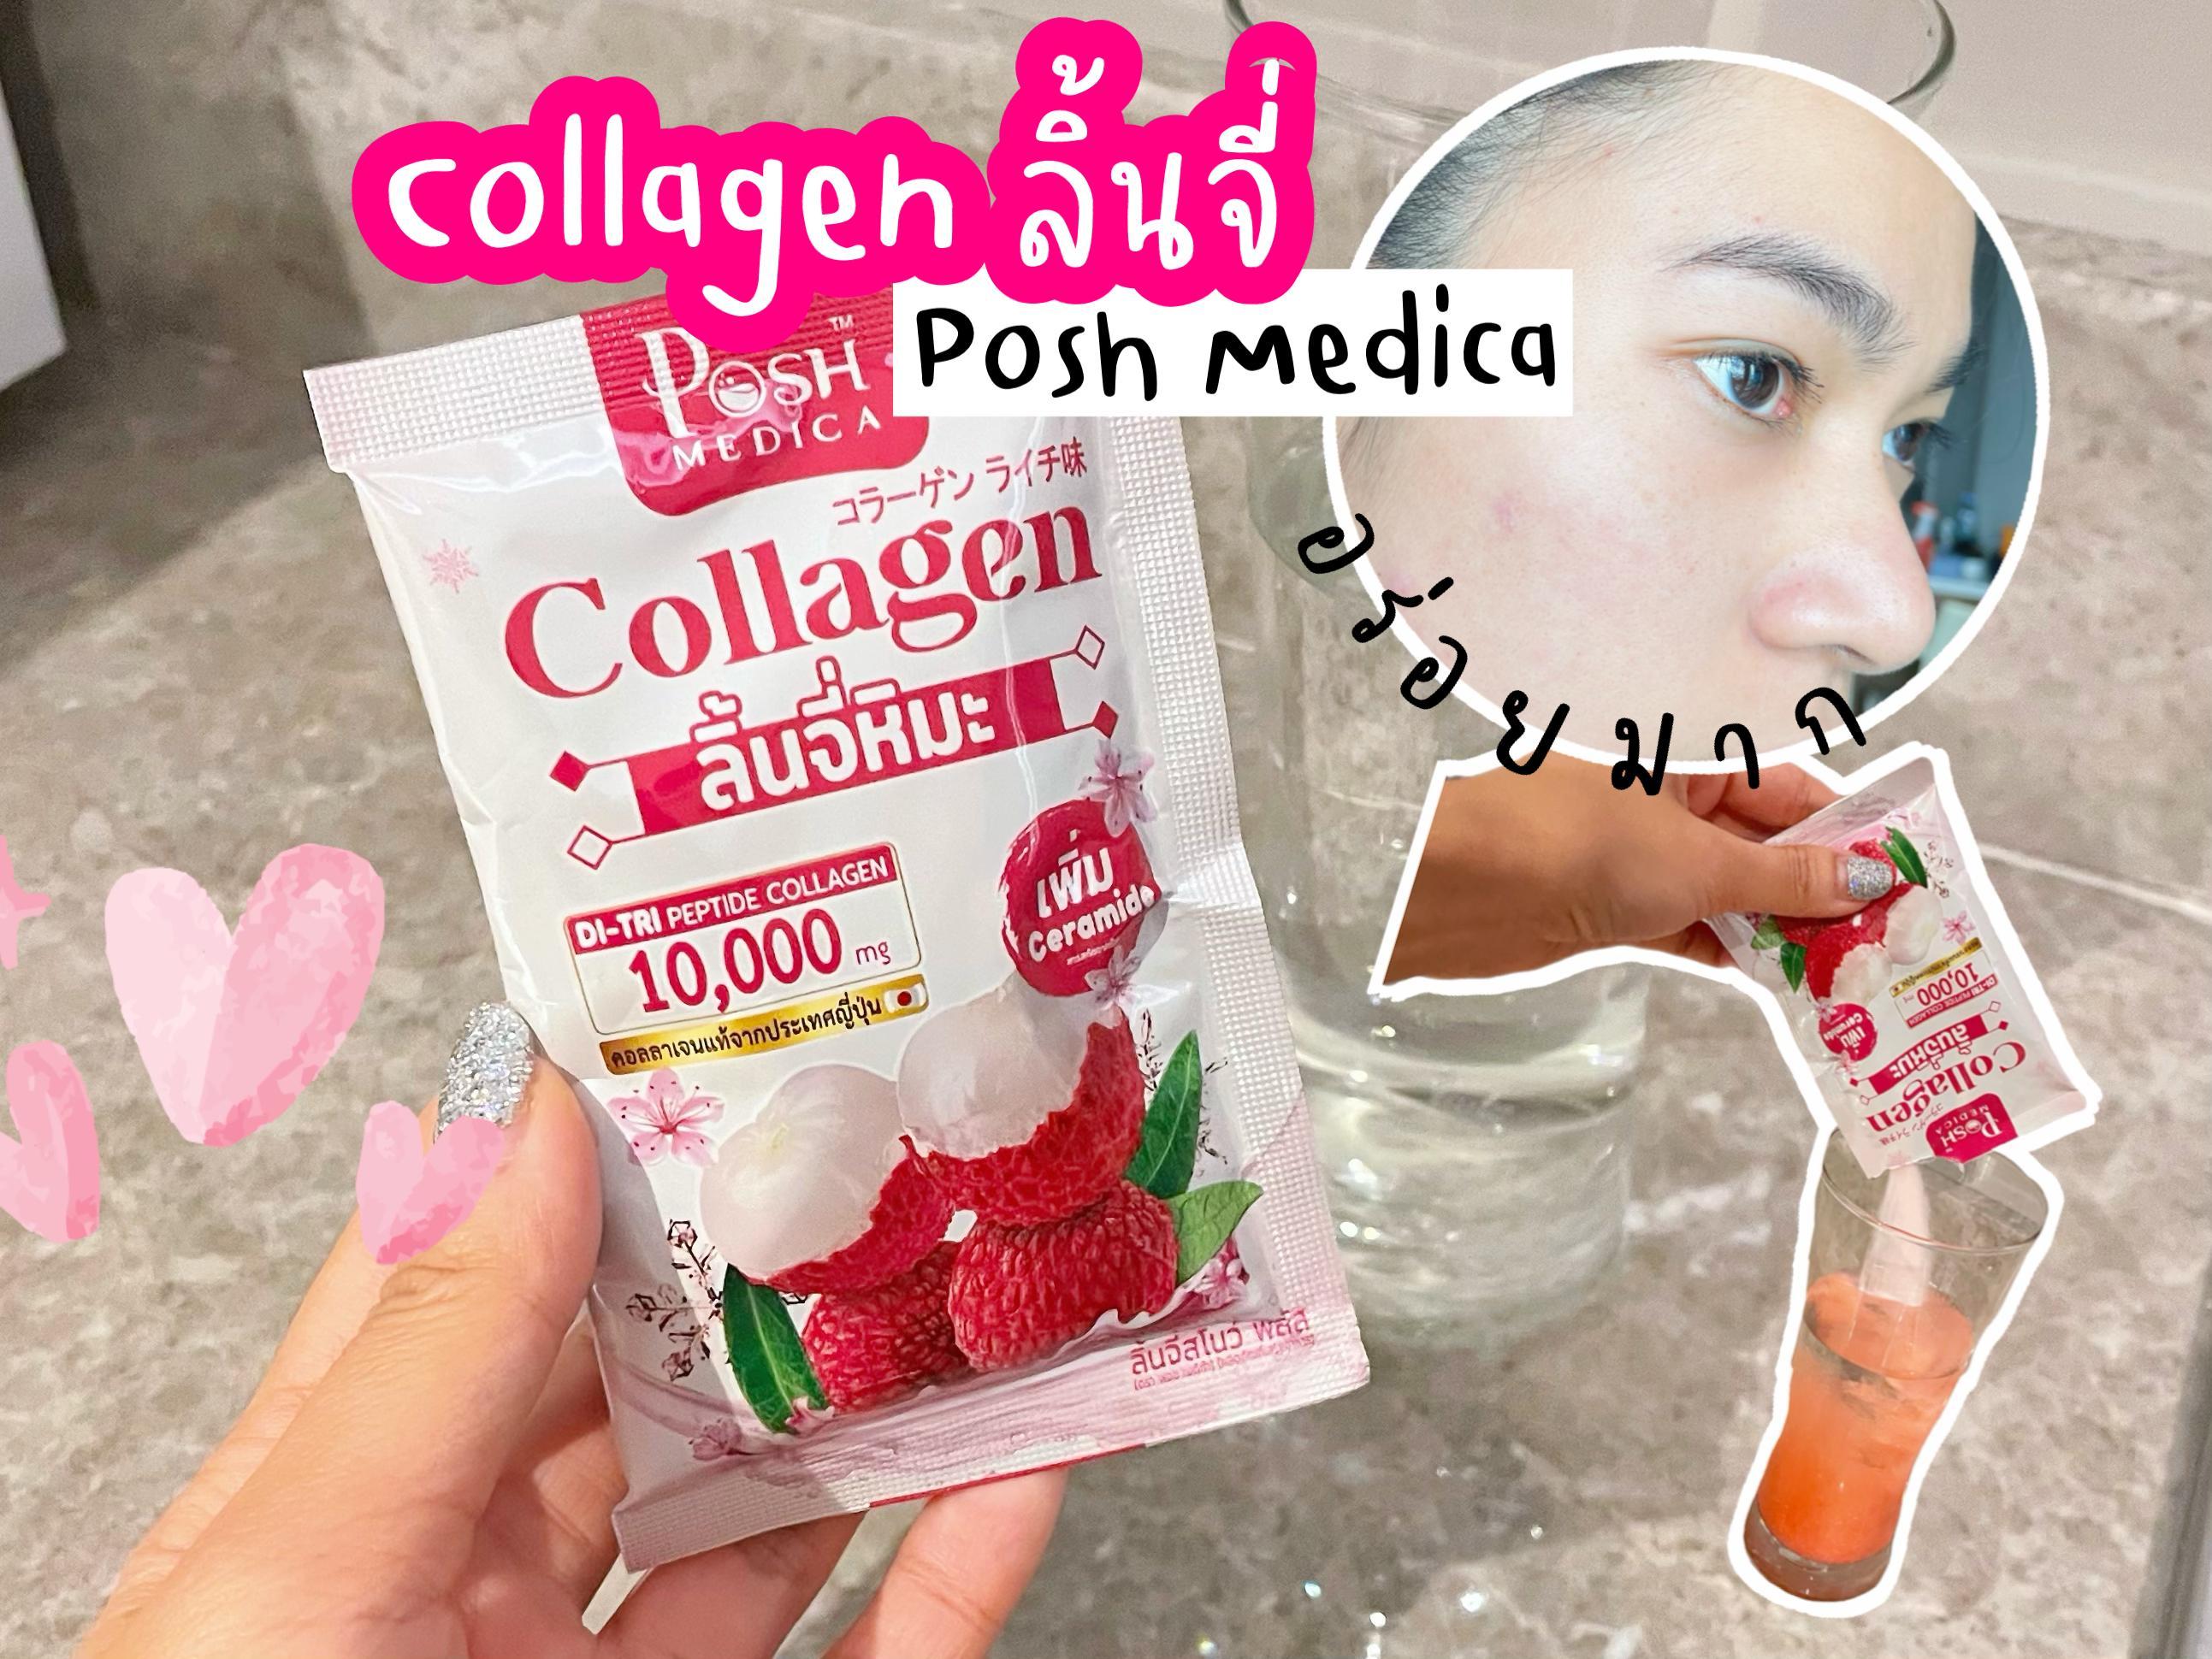 ภาพหน้าปก ป้ายยาอีกแล้วจ้า Collagen Posh Medica คอลลคลิ้นจี่ที่อร่อยที่สุดดด ที่:0